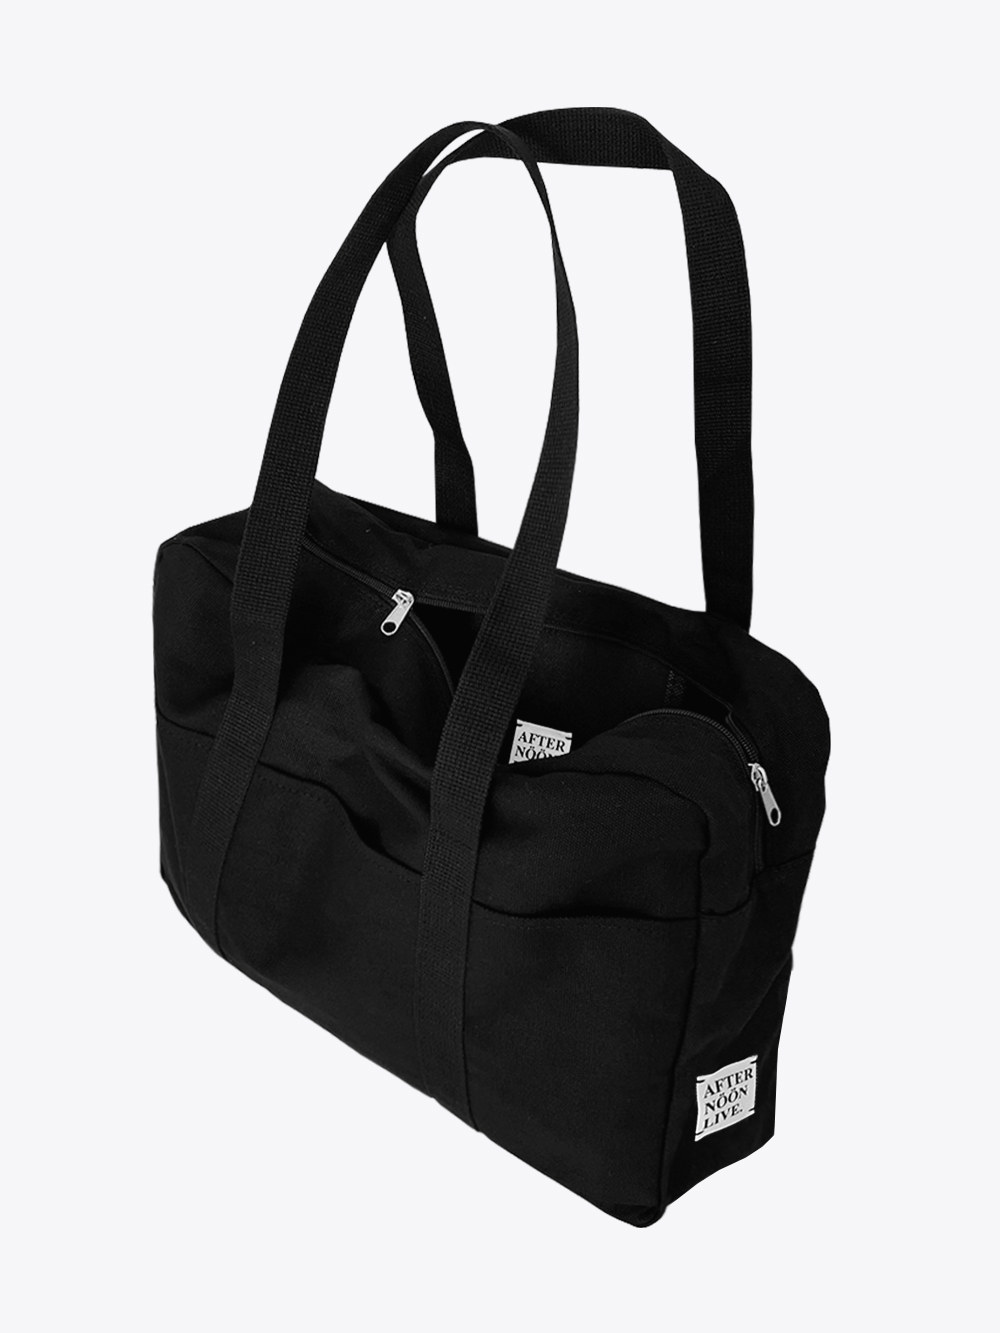 Classic Weekender Duffle Bag in Black